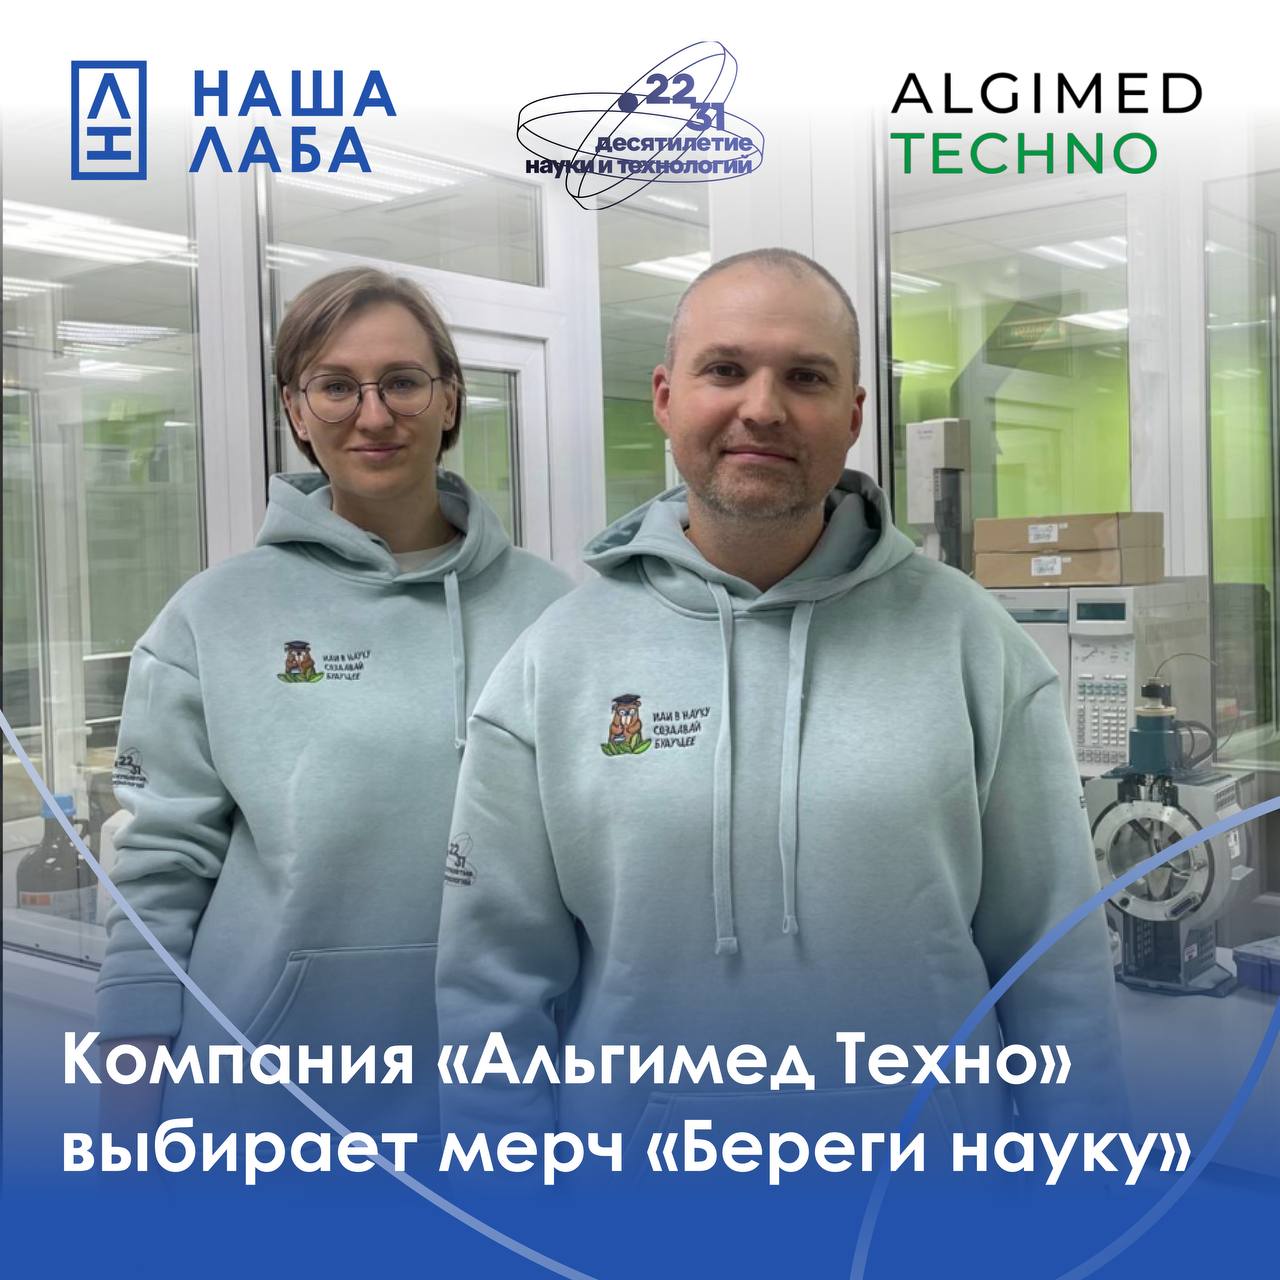 ​Компания «Альгимед Техно» выбирает мерч «Береги науку» в качестве корпоративной одежды для своих сотрудников.